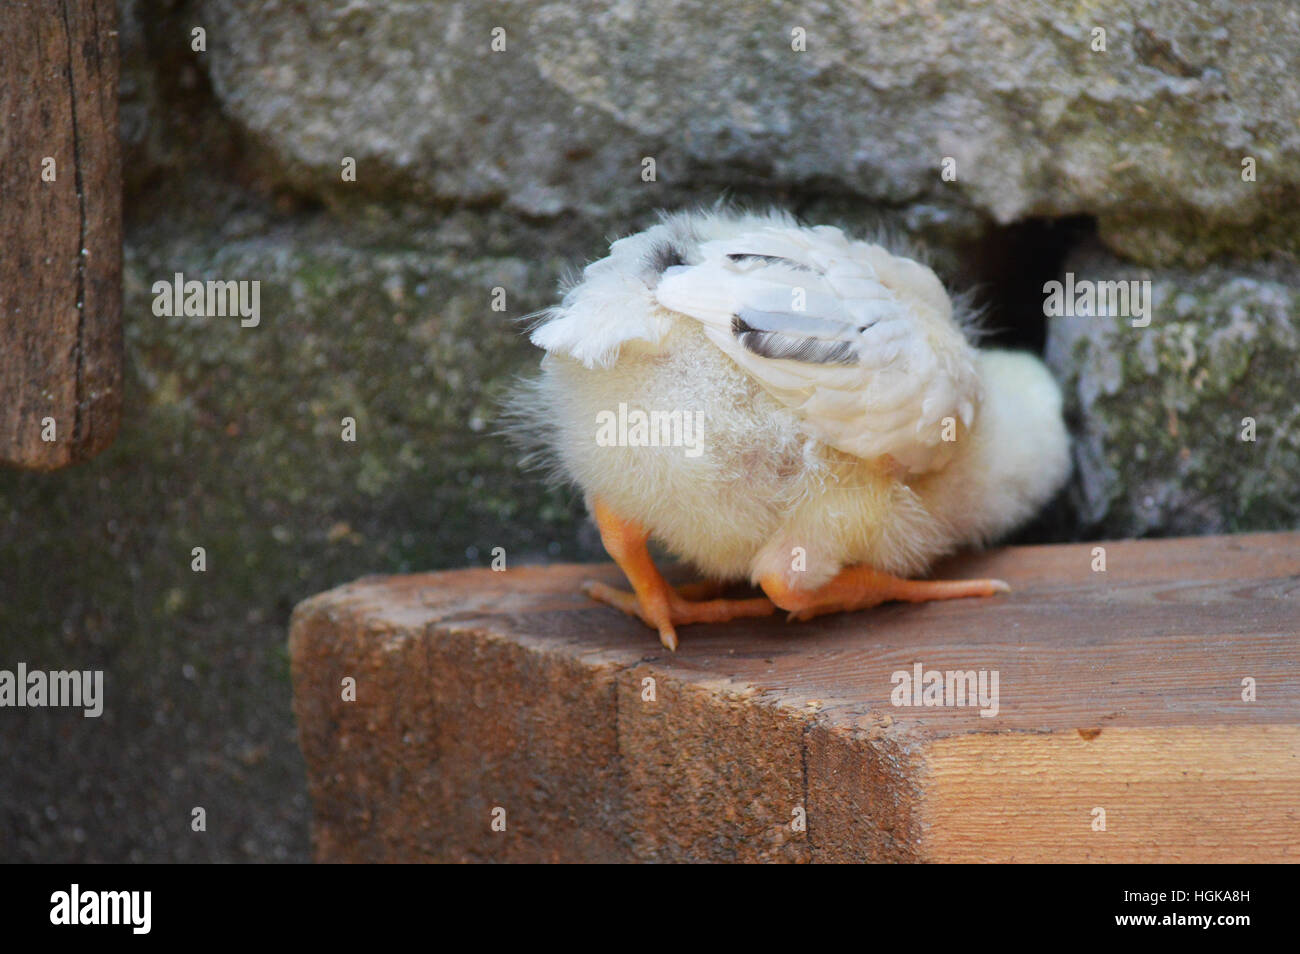 Trou poulet espionnage curiosité danger bird farm petit enfant enfant mignon animal du voyeurisme Banque D'Images